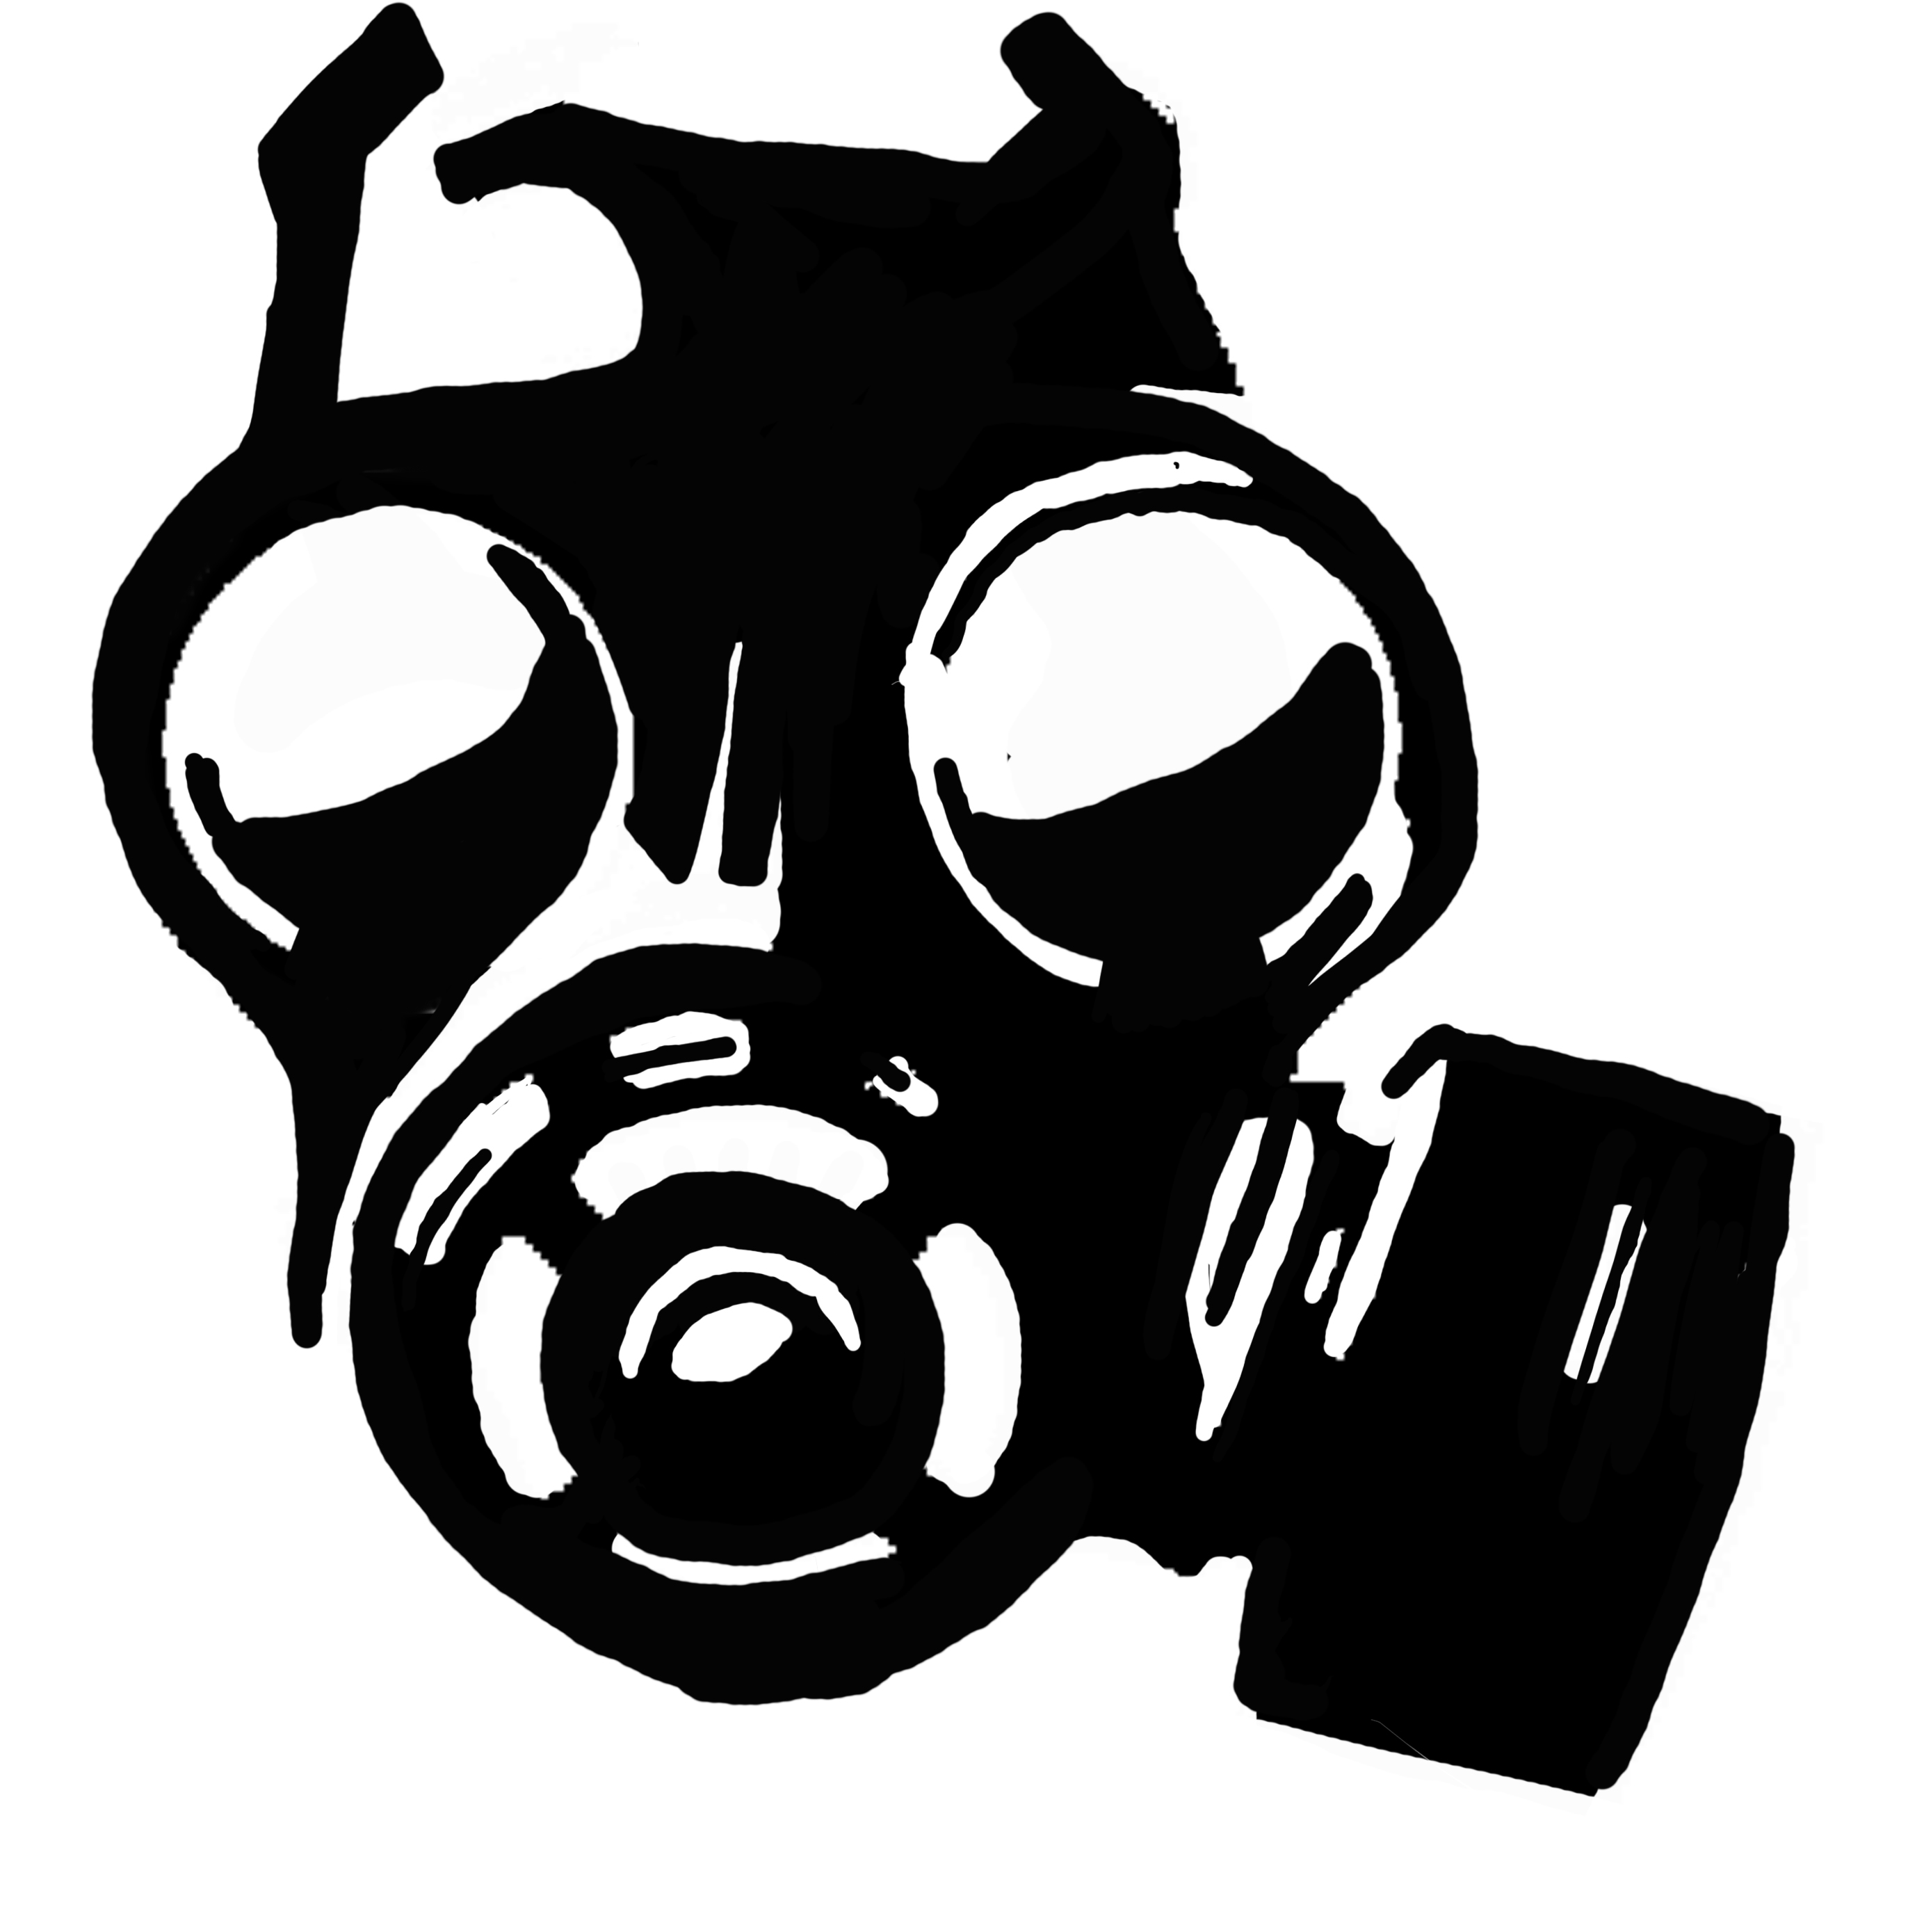 vector Gas Mask clip art .